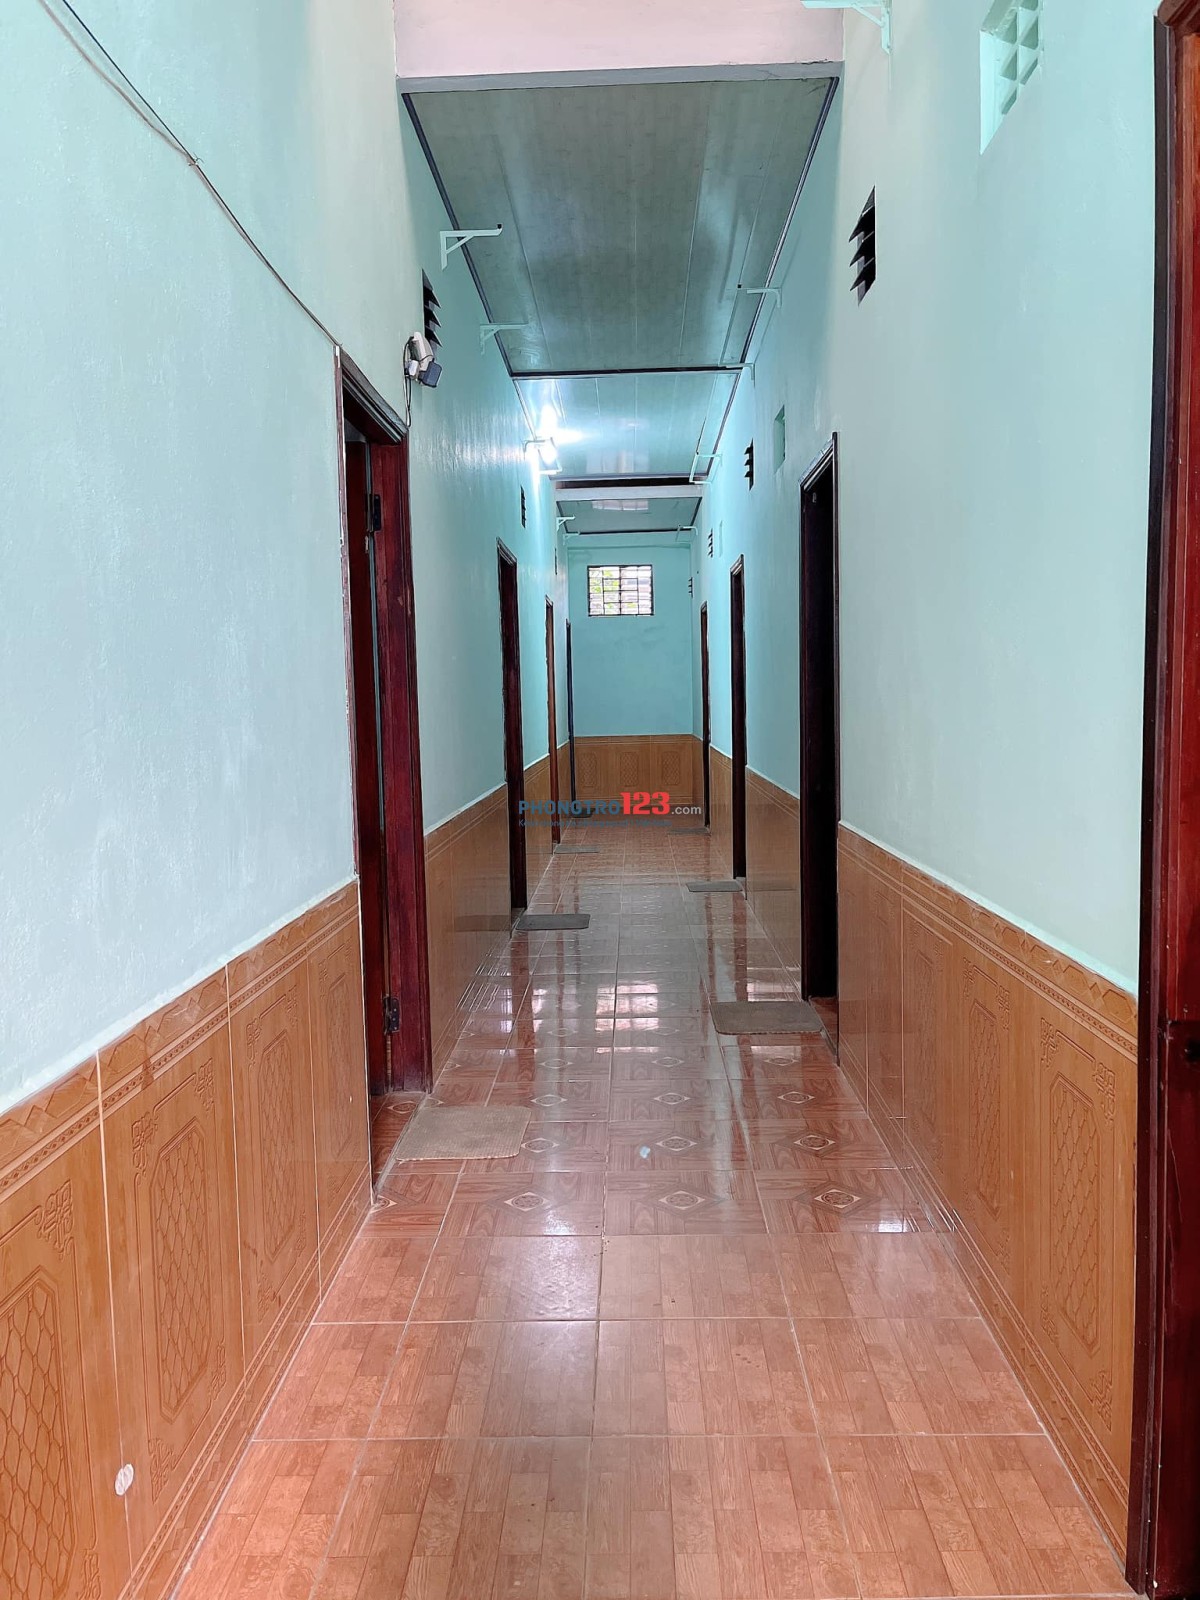 Cho thuê phòng trọ mới sơn sửa, sẵn nội thất cơ bản K12/6 Trường Sơn, gần khu công nghiệp Hòa Cầm